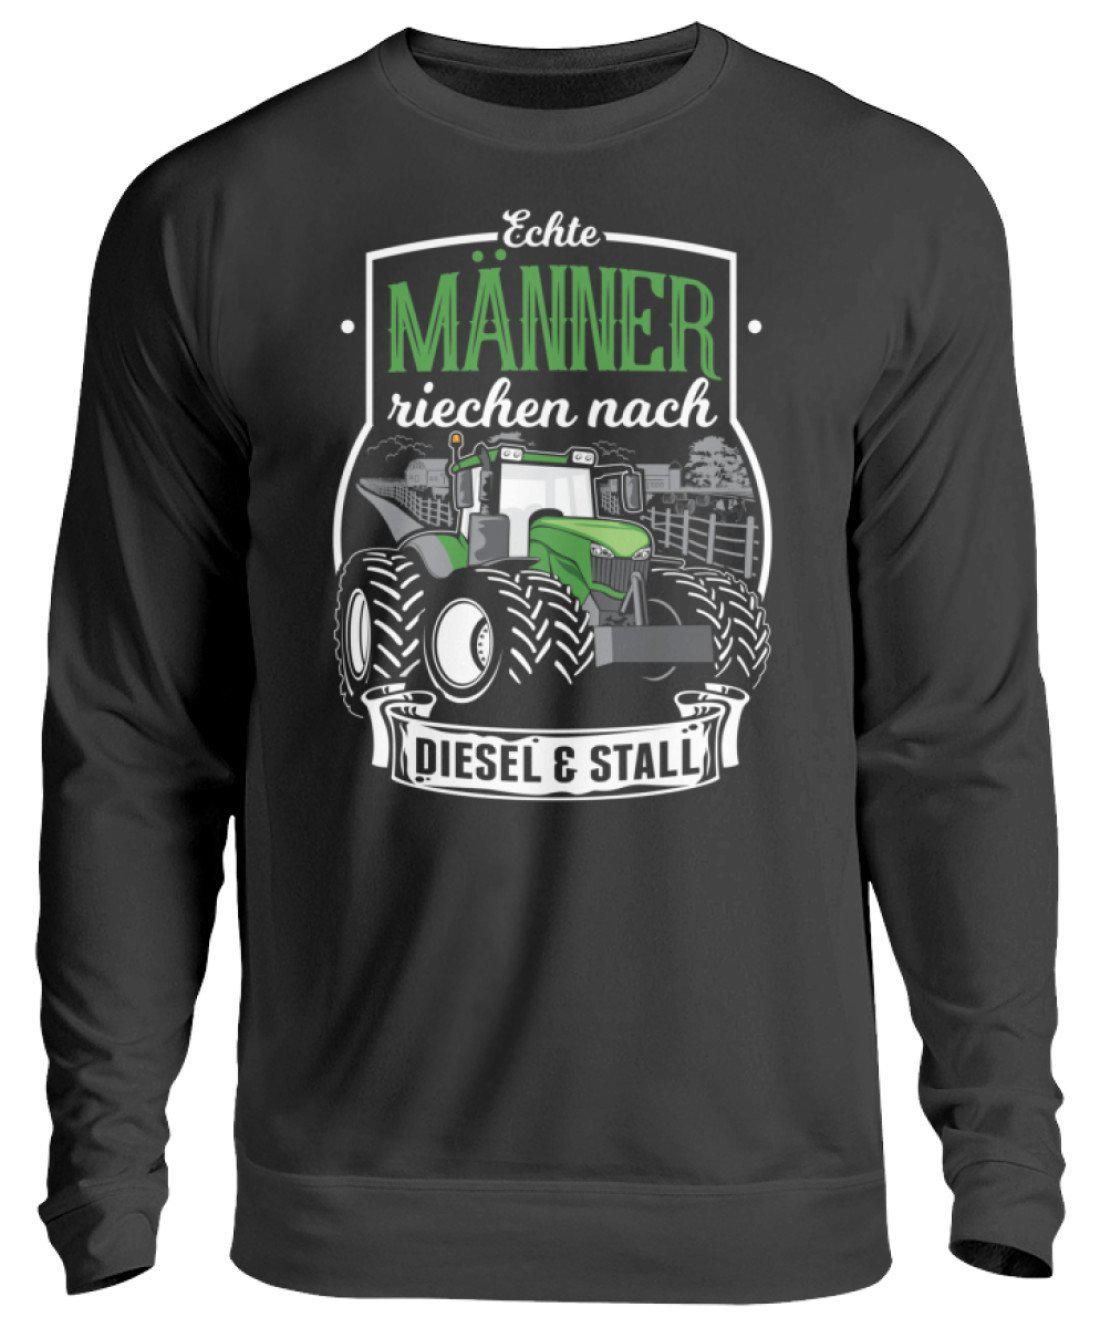 Männer Diesel und Stall · Unisex Sweatshirt Pullover-Unisex Sweatshirt-Jet Black-S-Agrarstarz